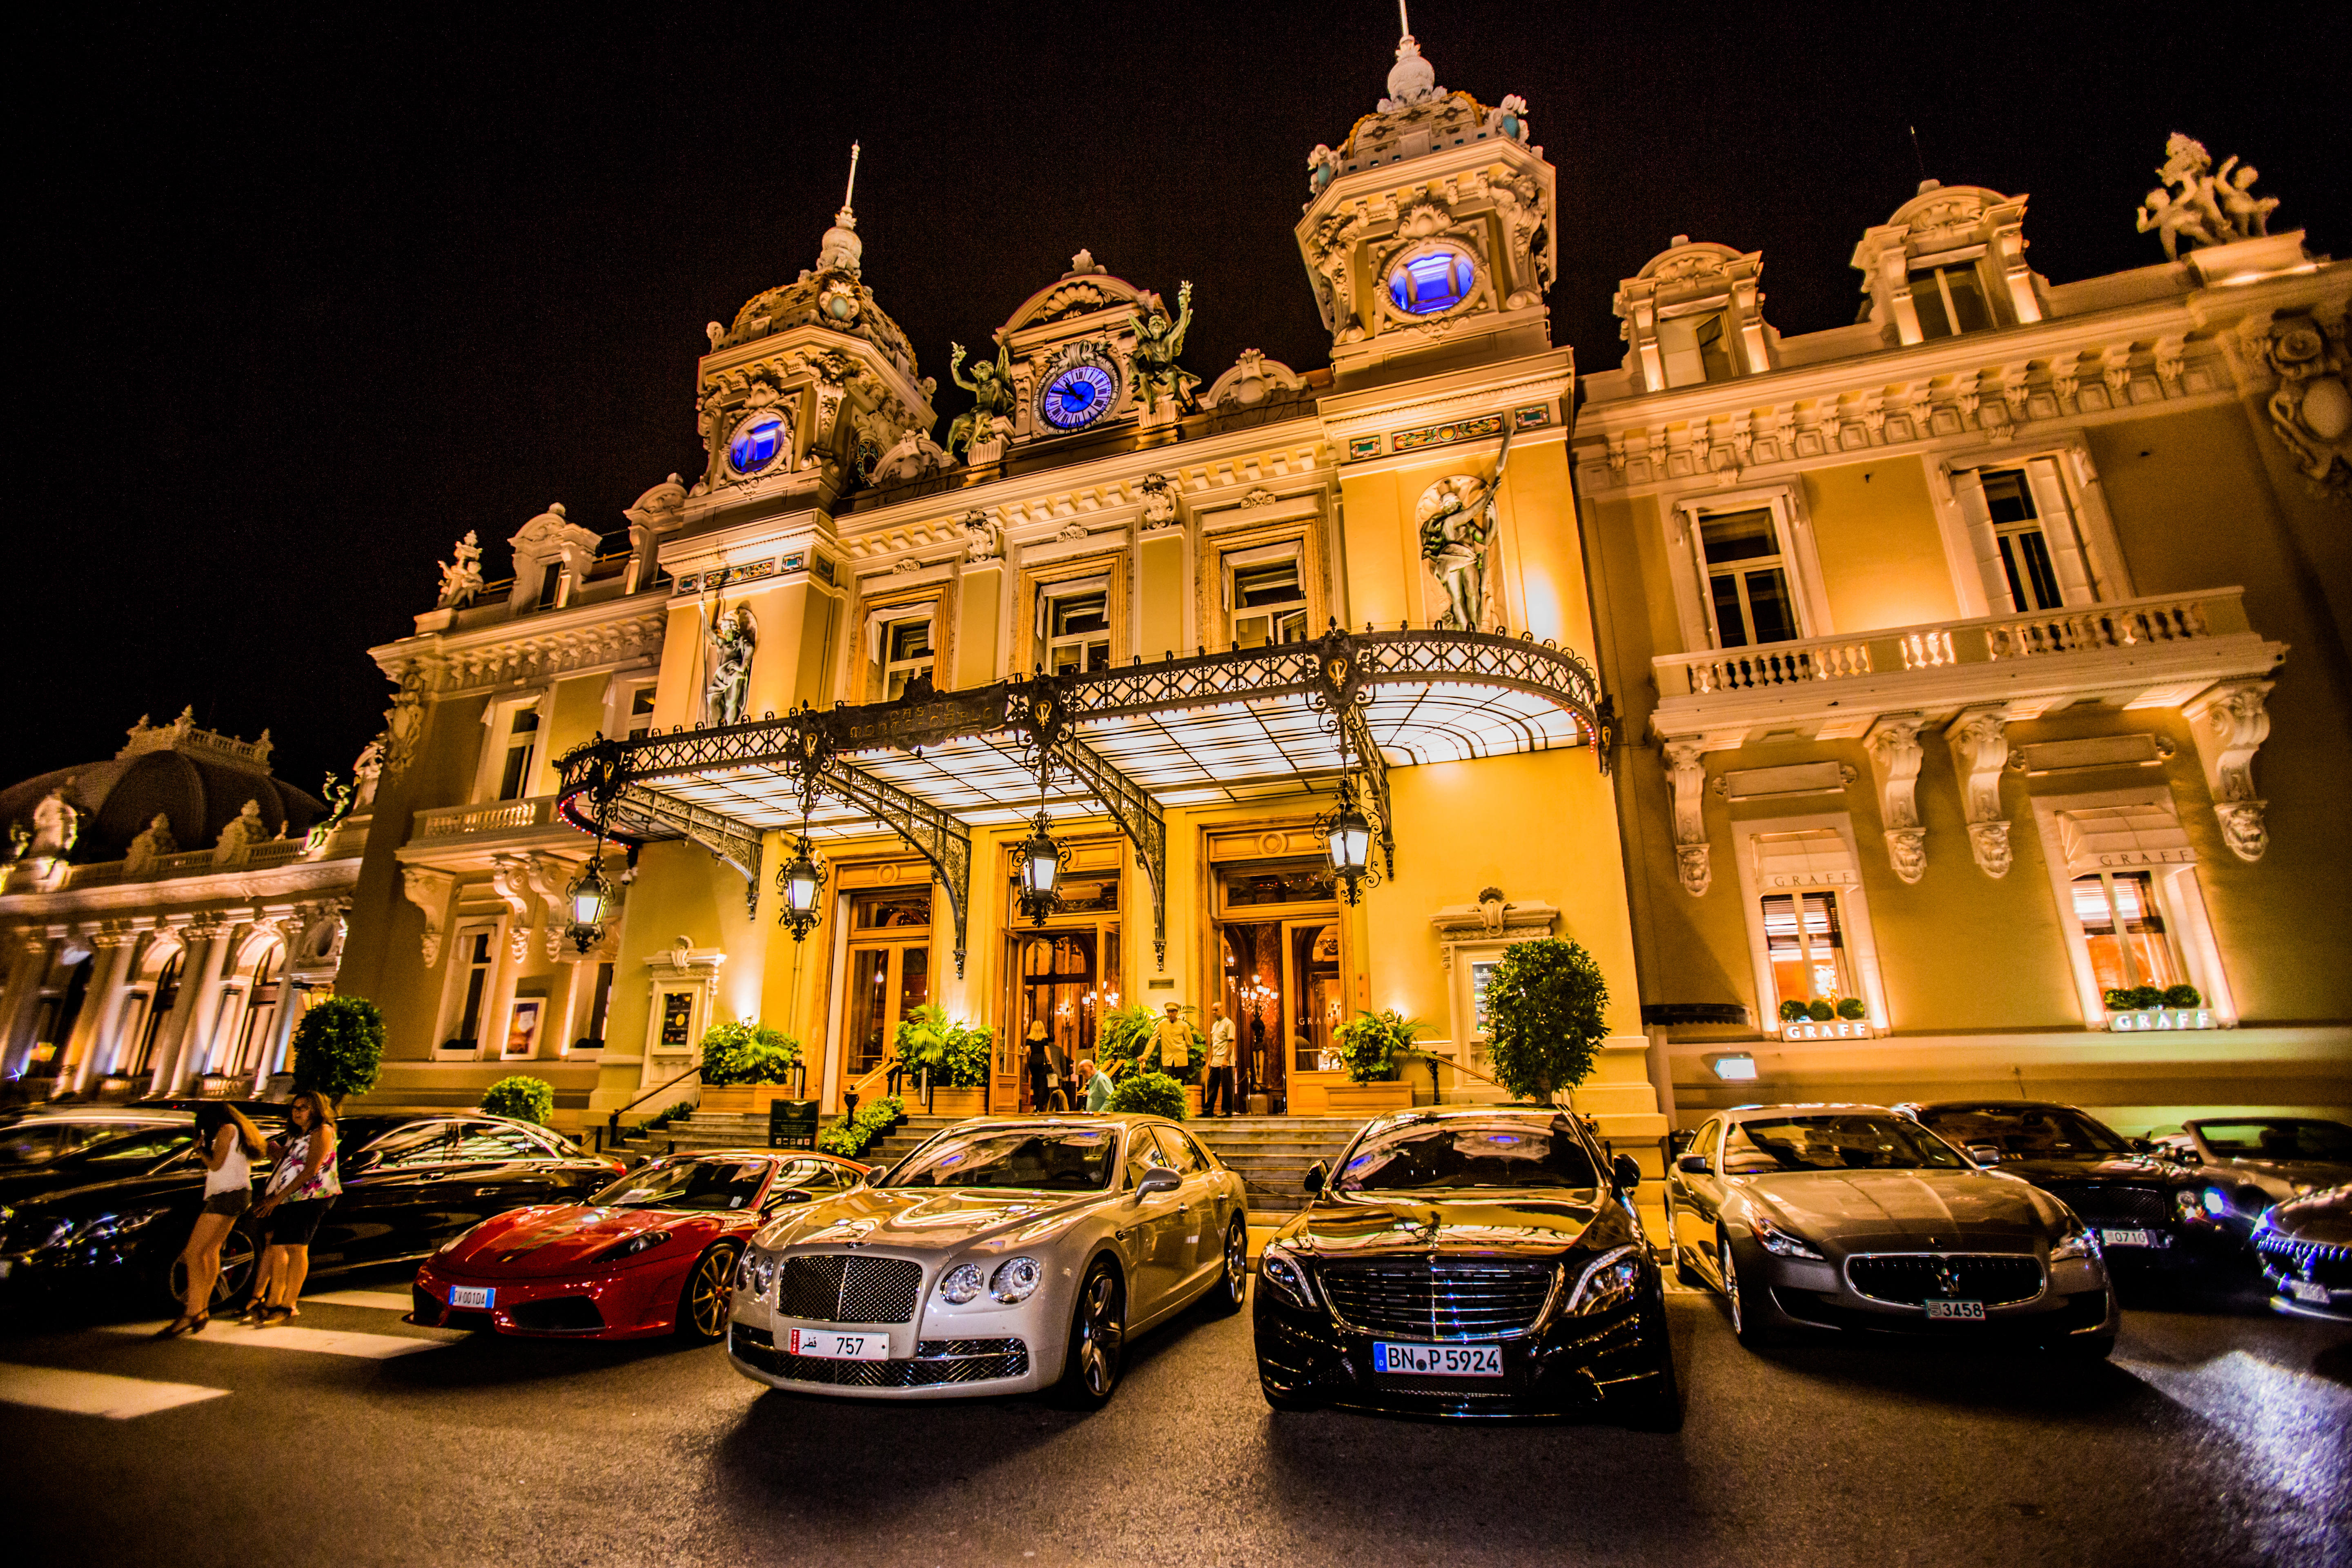 Casino at night, Monaco, Europe